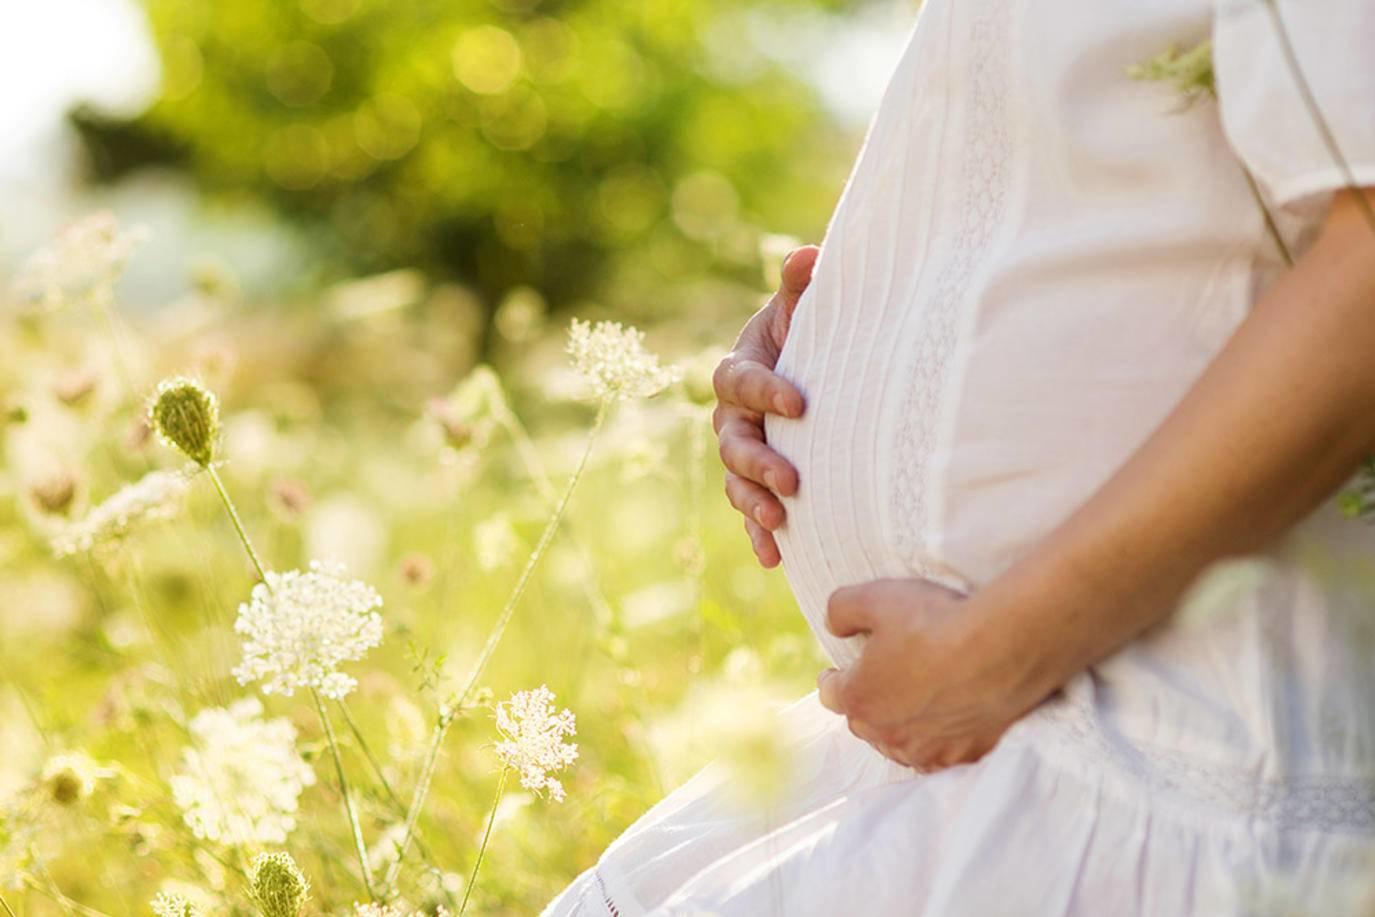 سؤال وجواب: كيف يتنفس الجنين في بطن أمه، وما سر بكائه بعد الولادة؟
